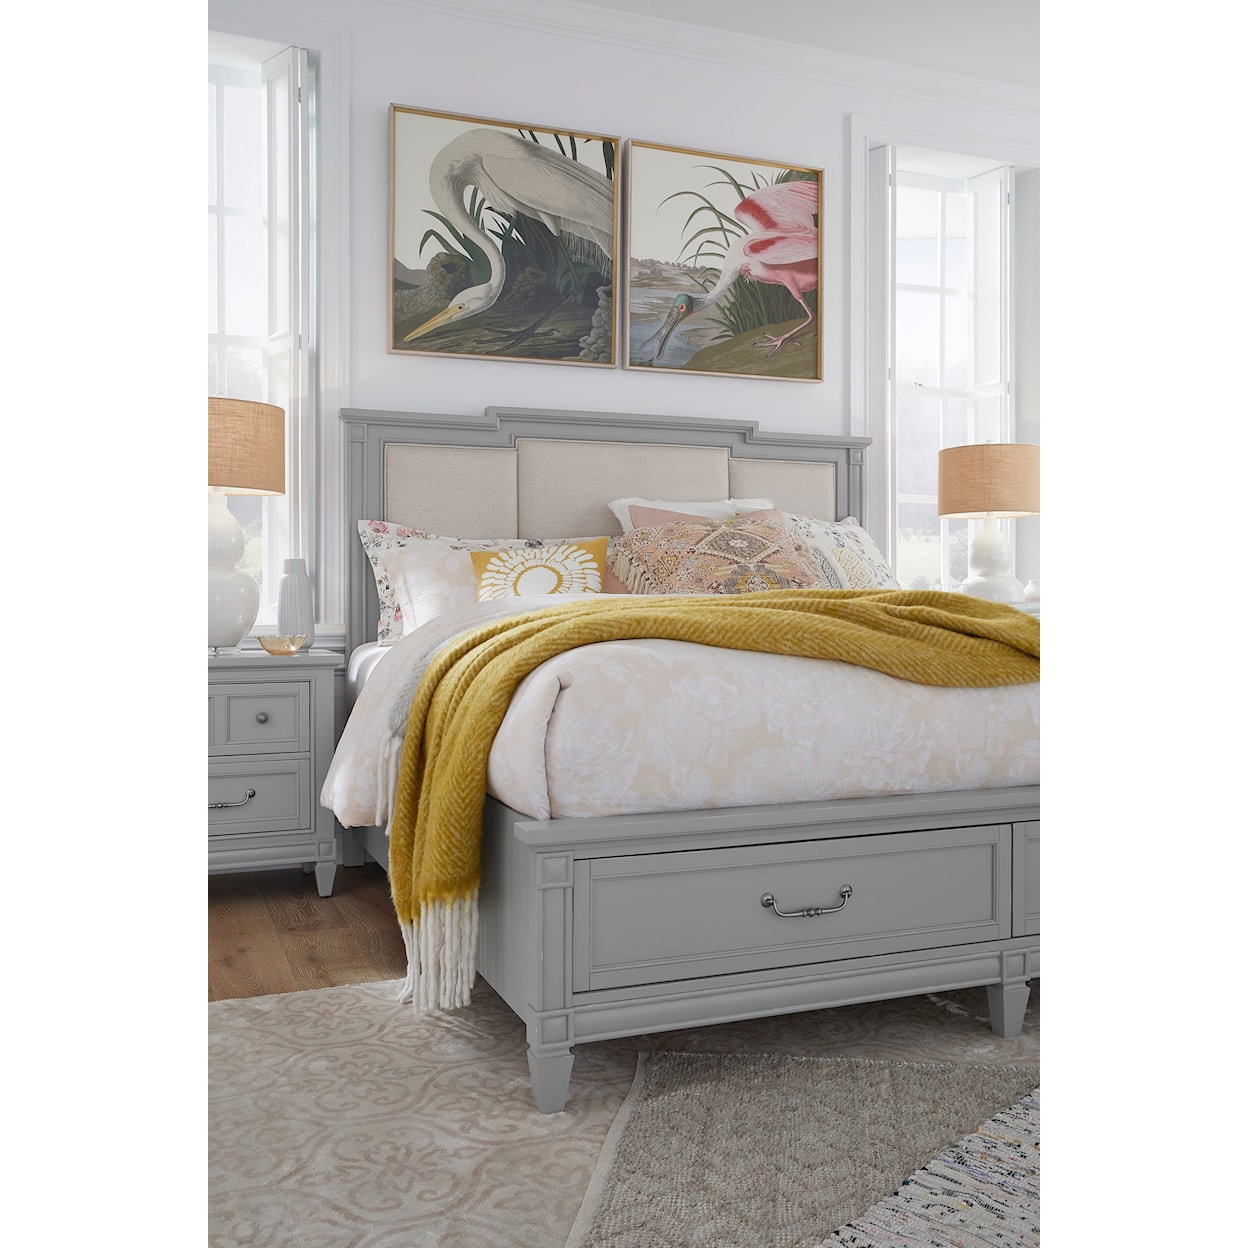 Magnussen Home Glenbrook Bedroom 6-Piece Upholstered Queen Bedroom Set